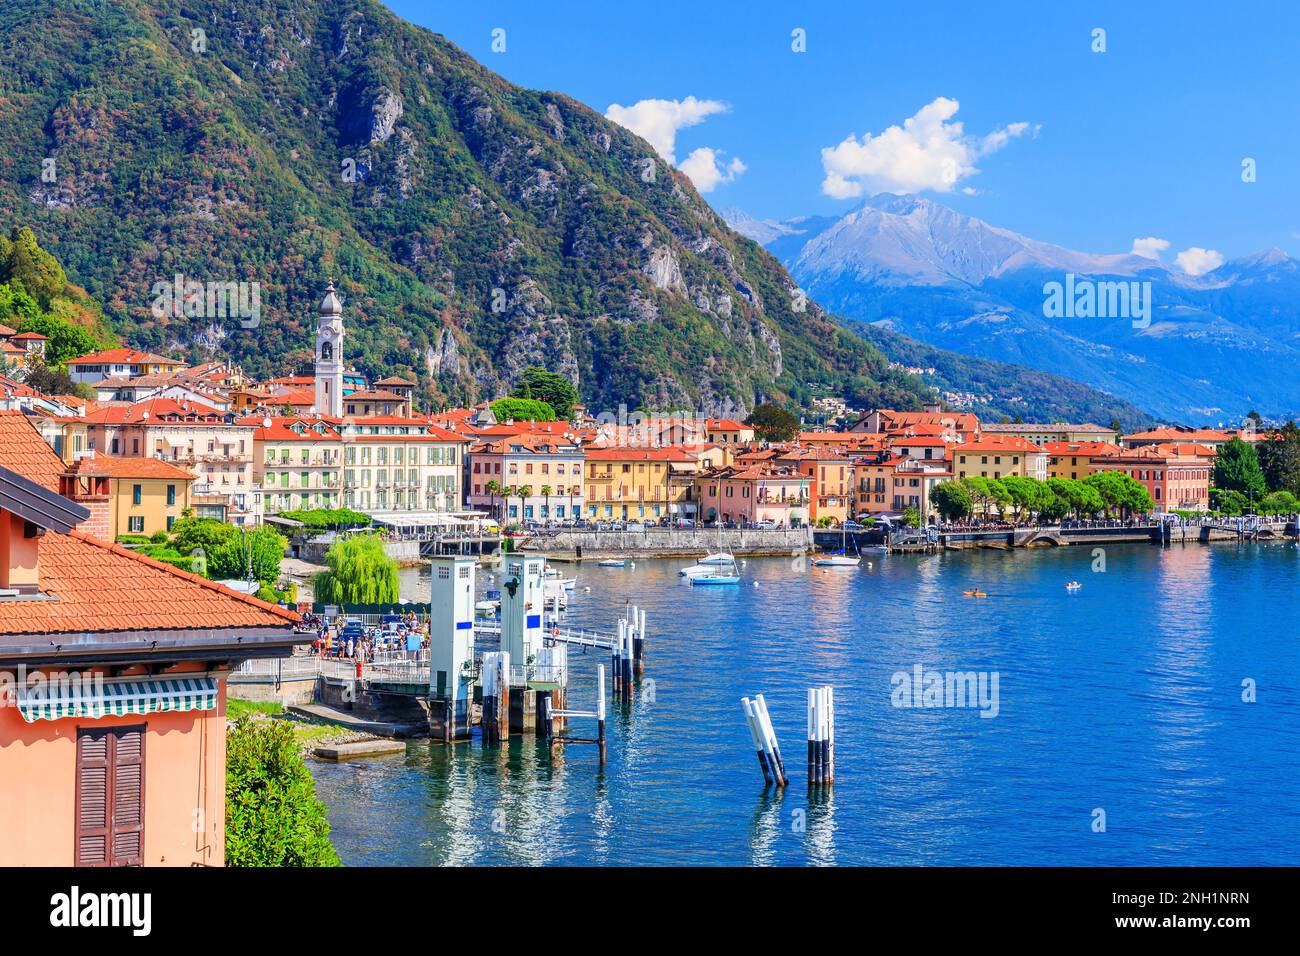 Como Lake. Tremezzo town, traditional lake village. Italy, Europe. Stock Photo